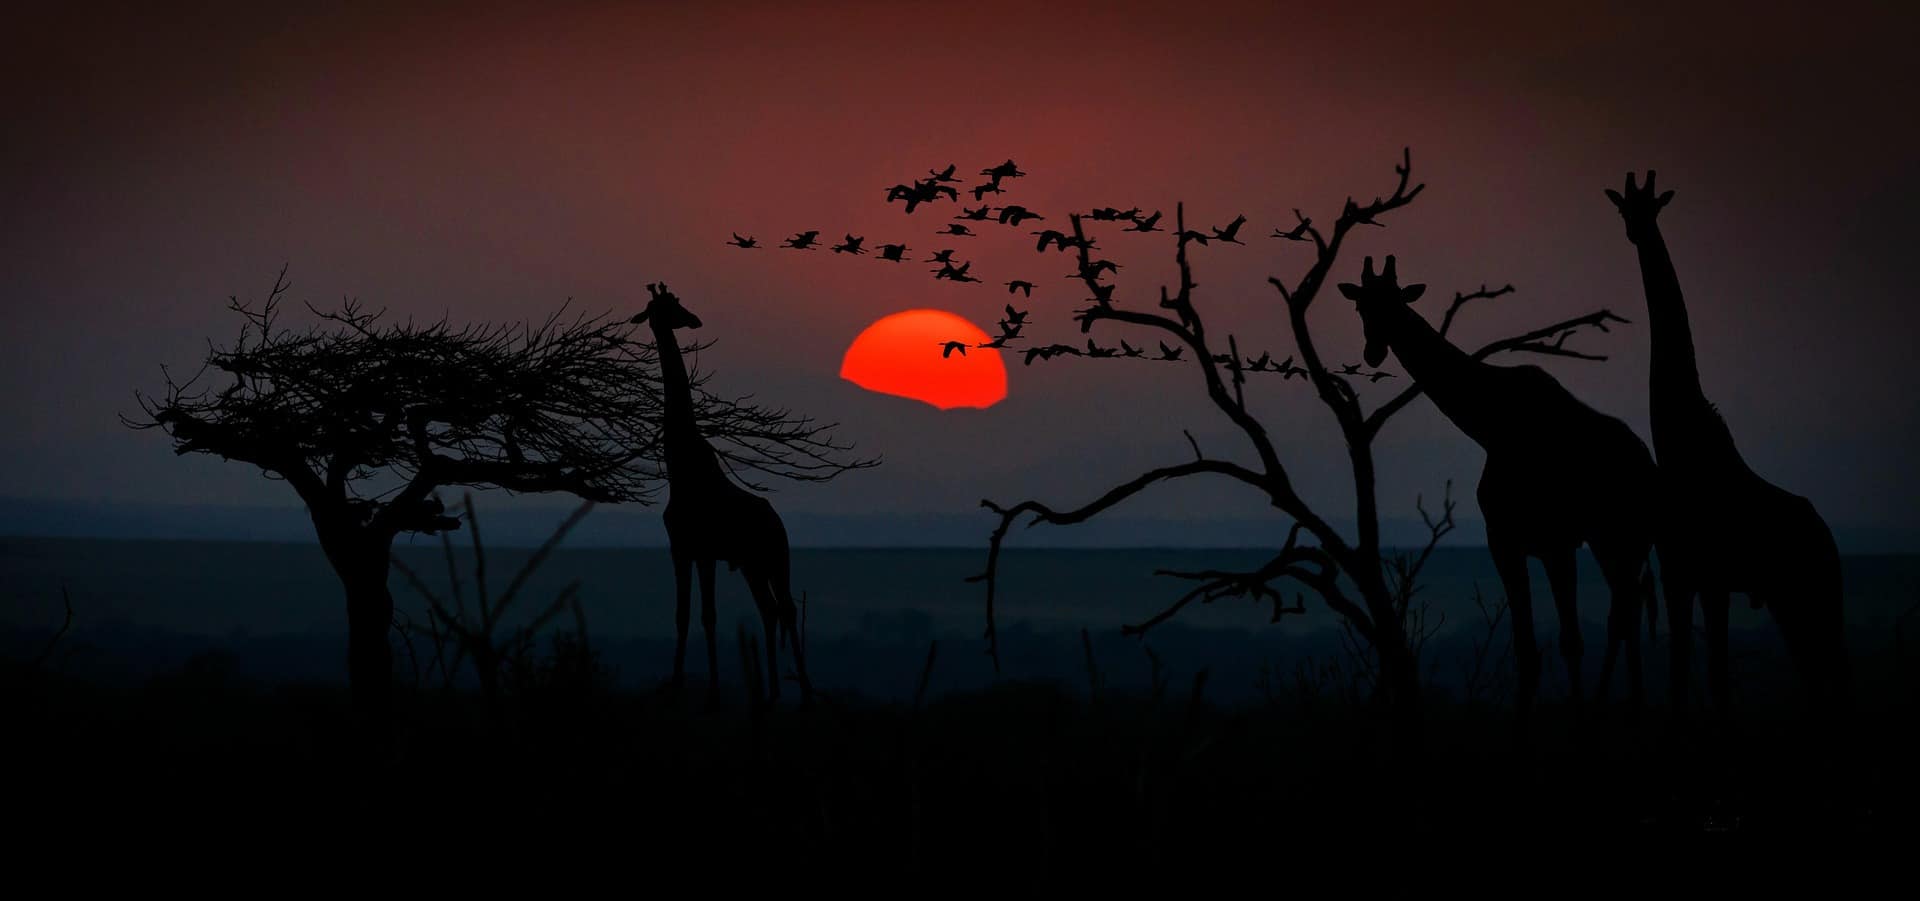 africa giraffes